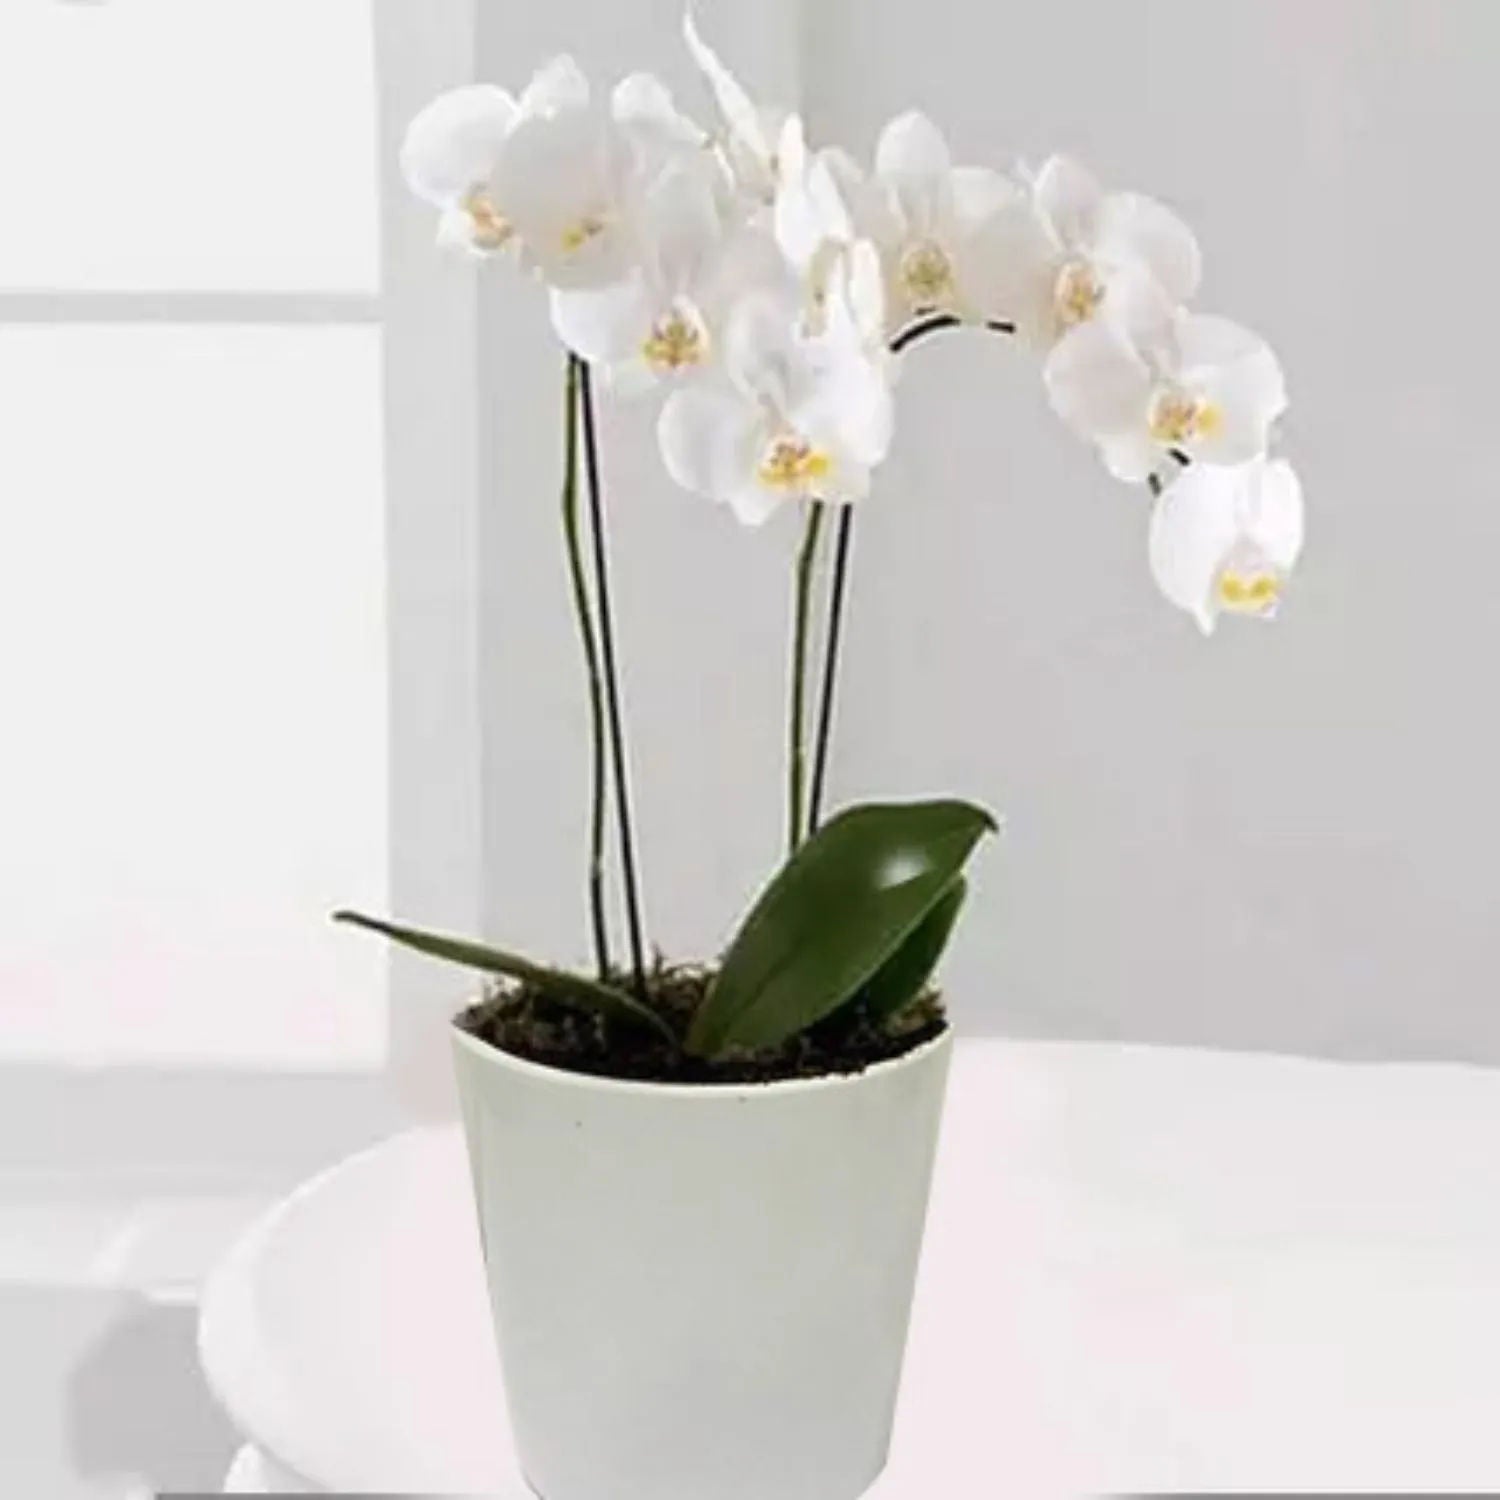 نبات منزلي - نبات أوركيد مزدوج لون أبيض في أصيص أبيض